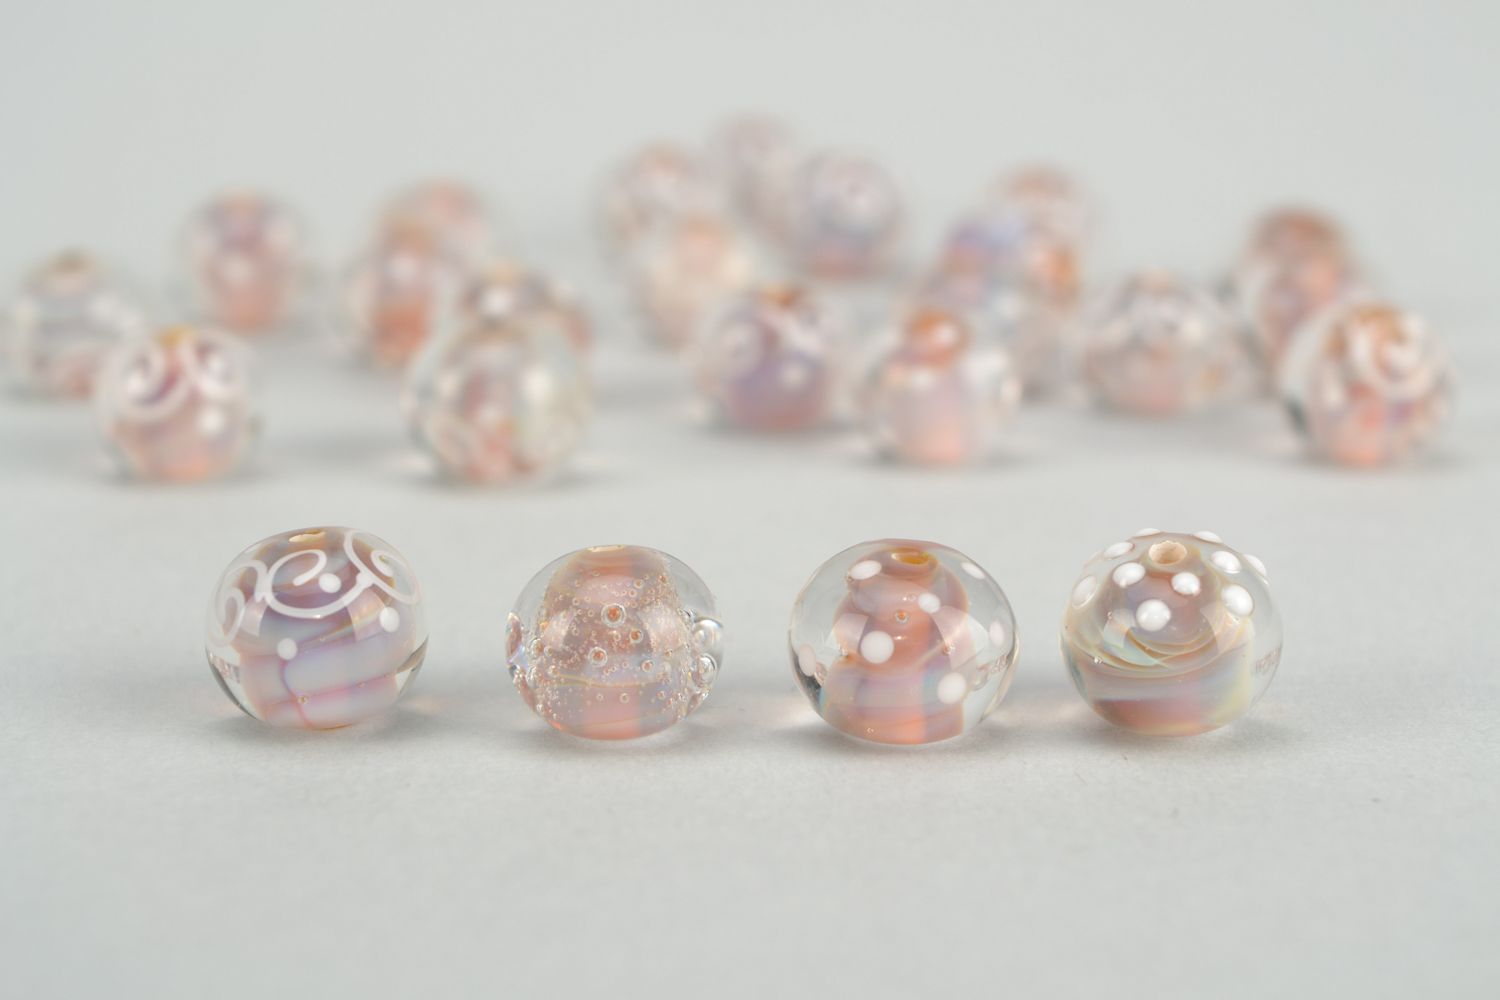 Jeu de perles de fantaisie décoratives 24 pièces photo 1